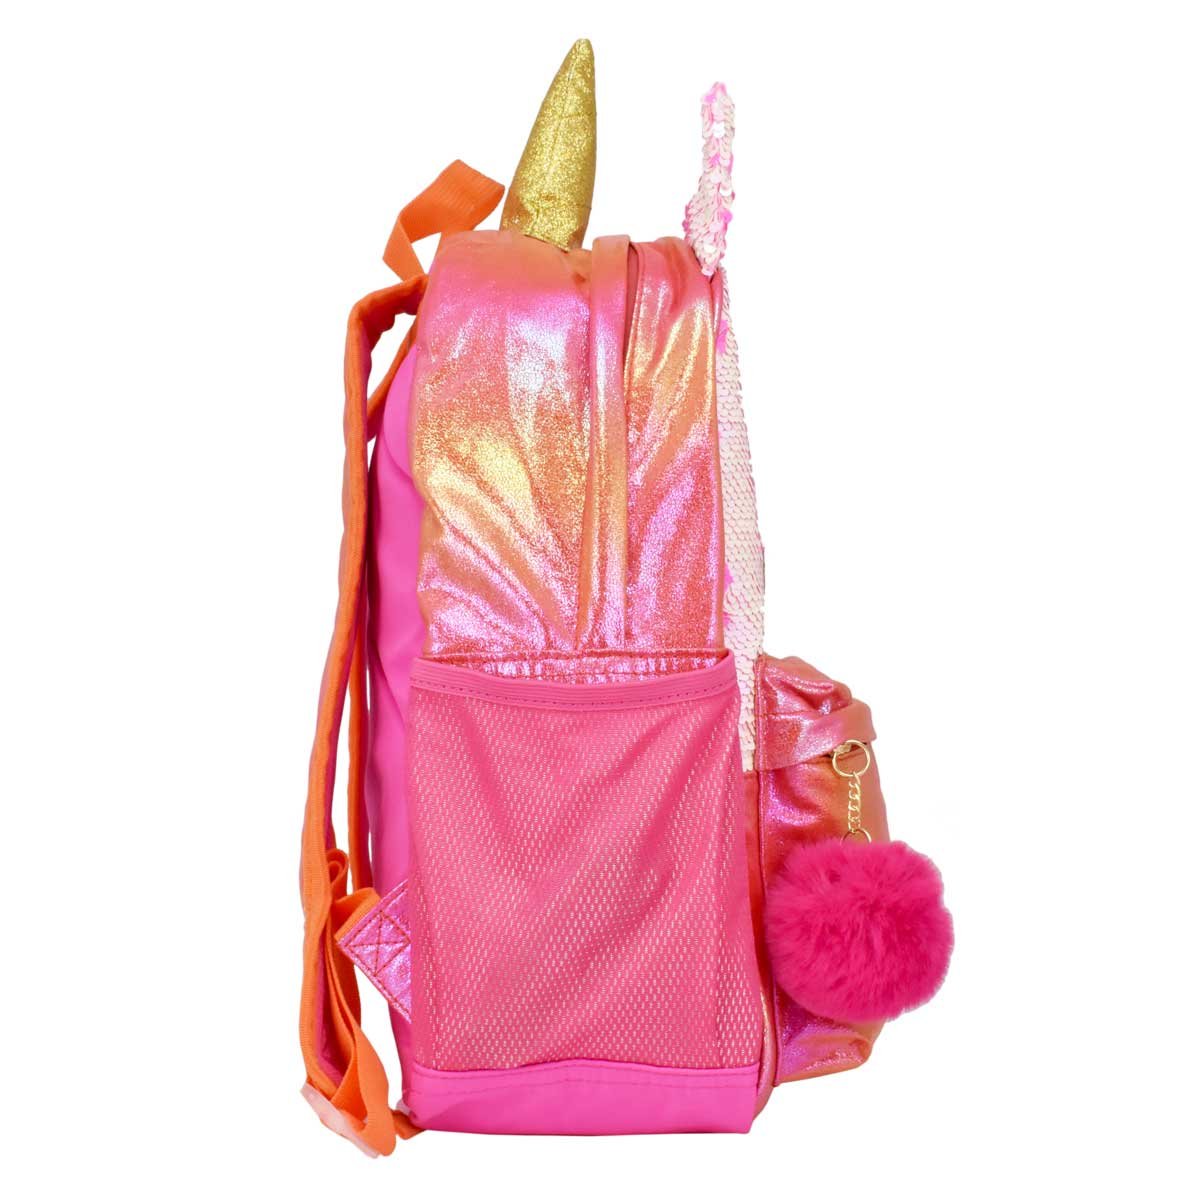 Backpack Forma de Unicornio Baby Phat